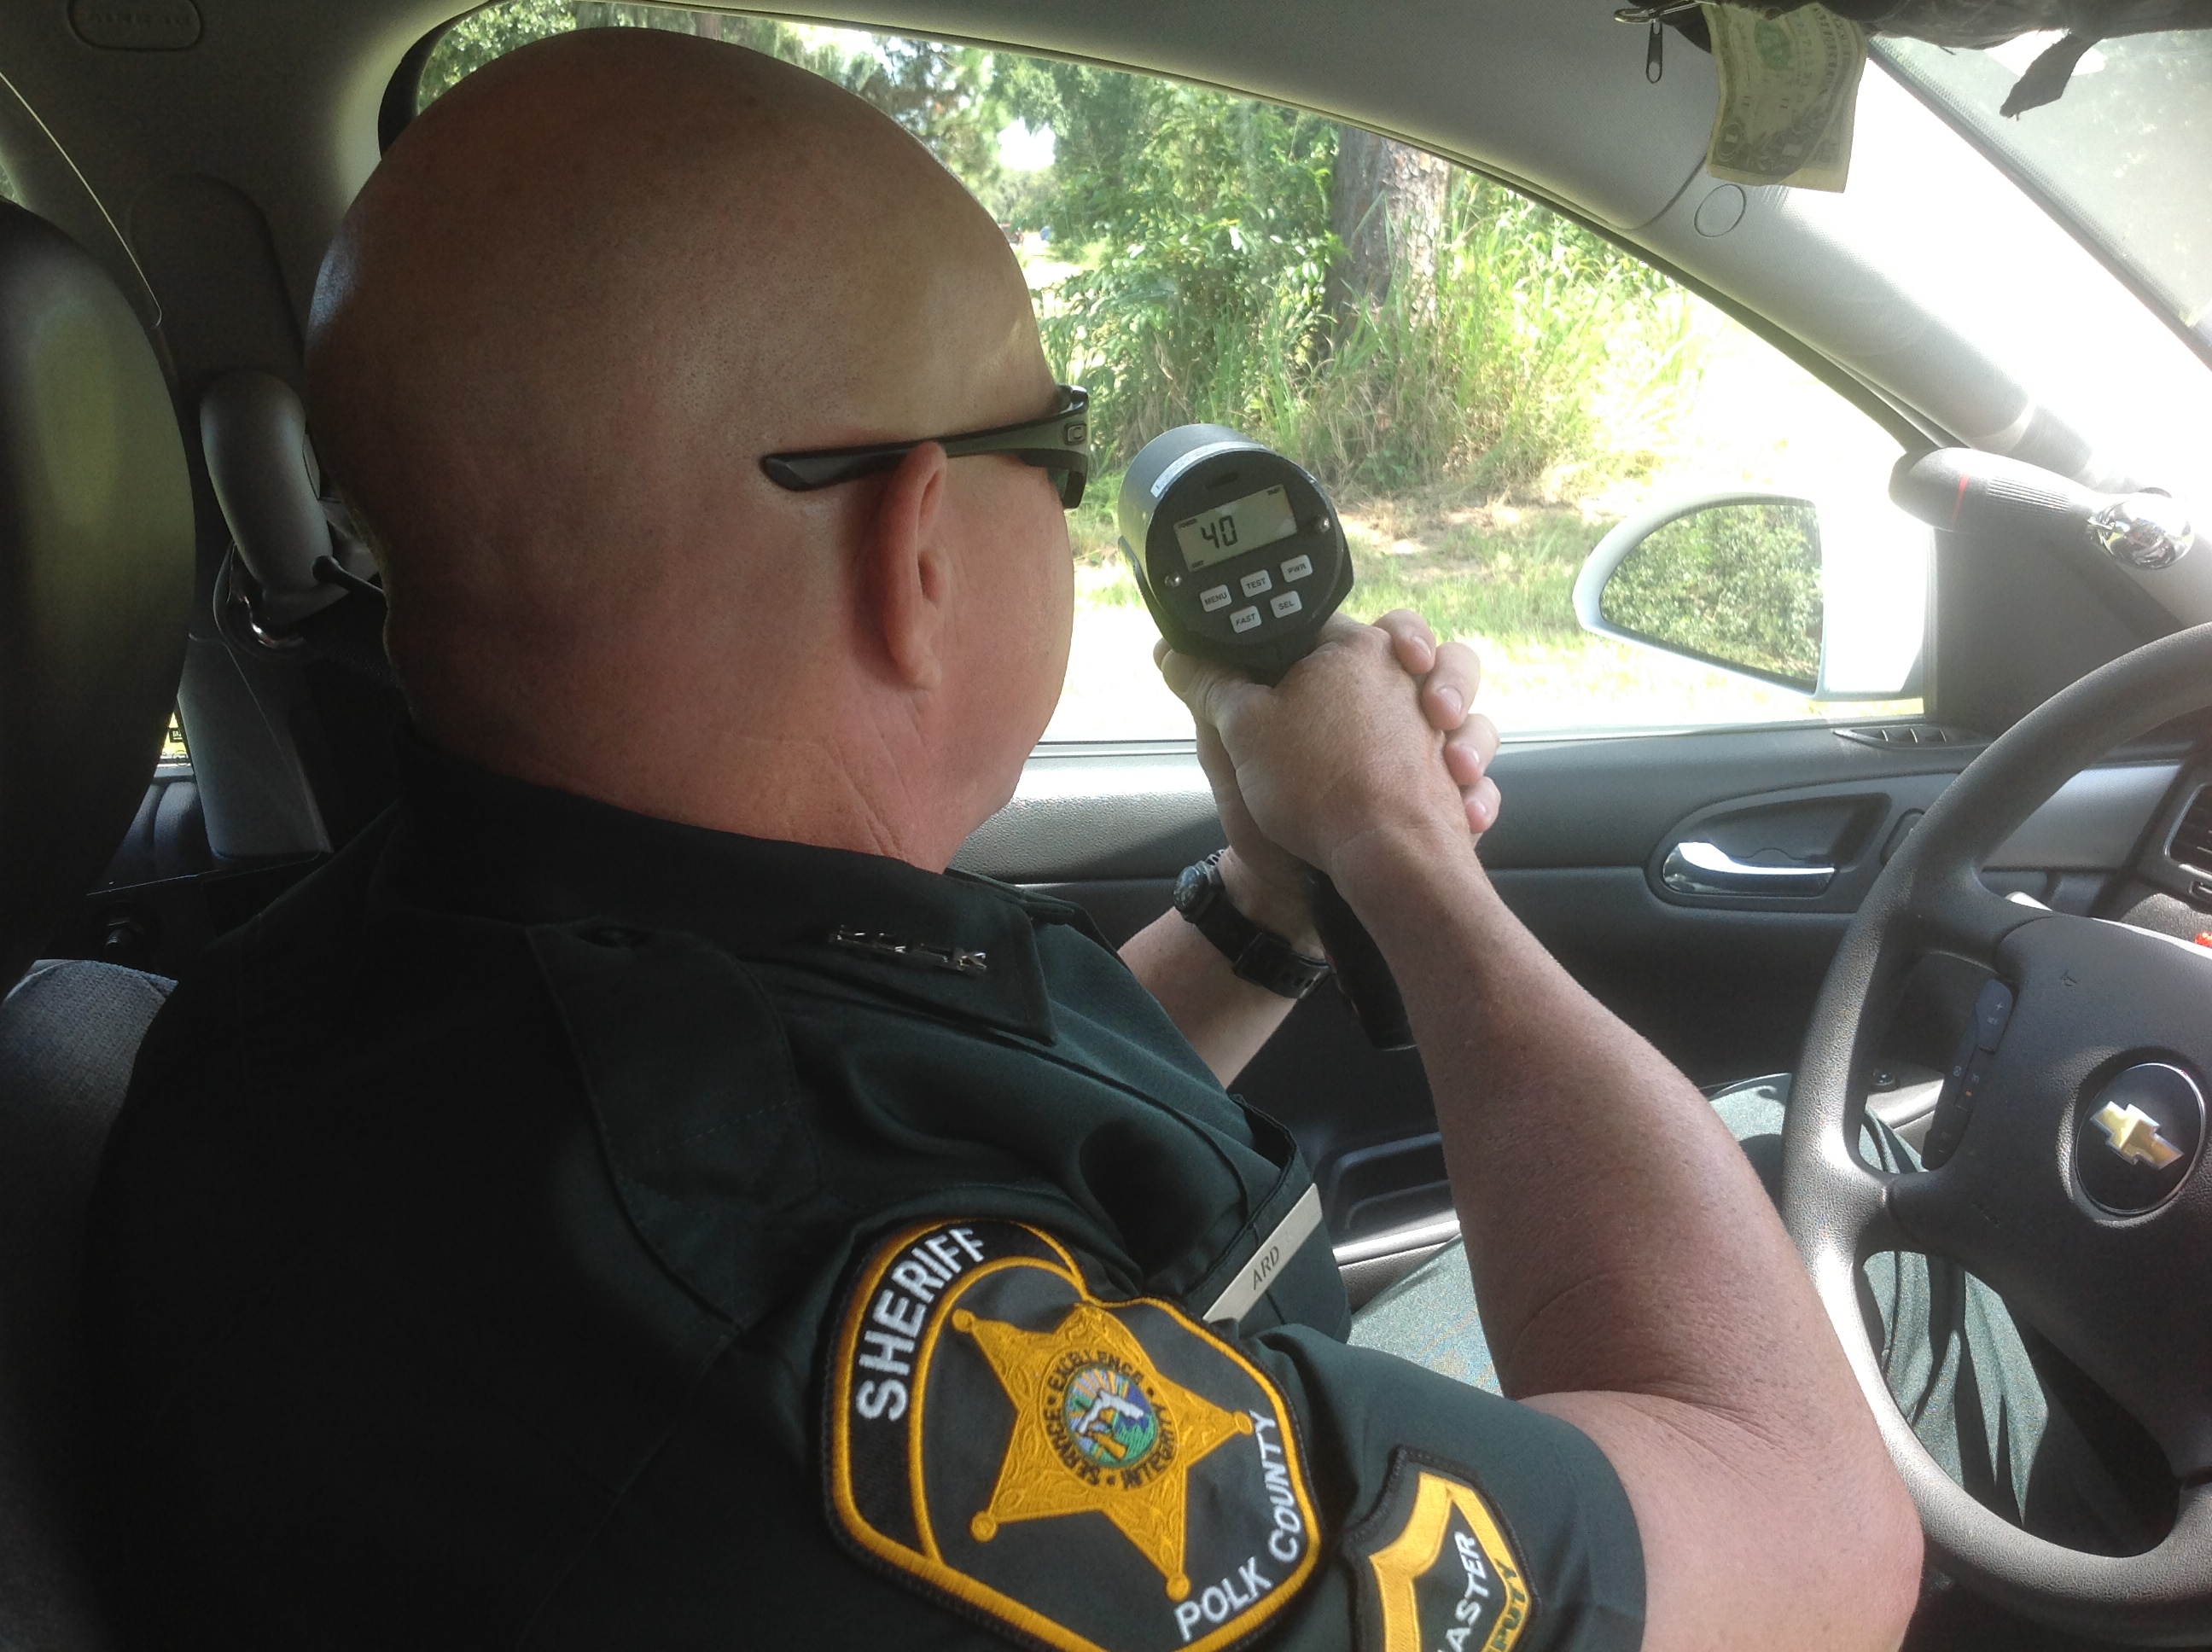 deputy using radar